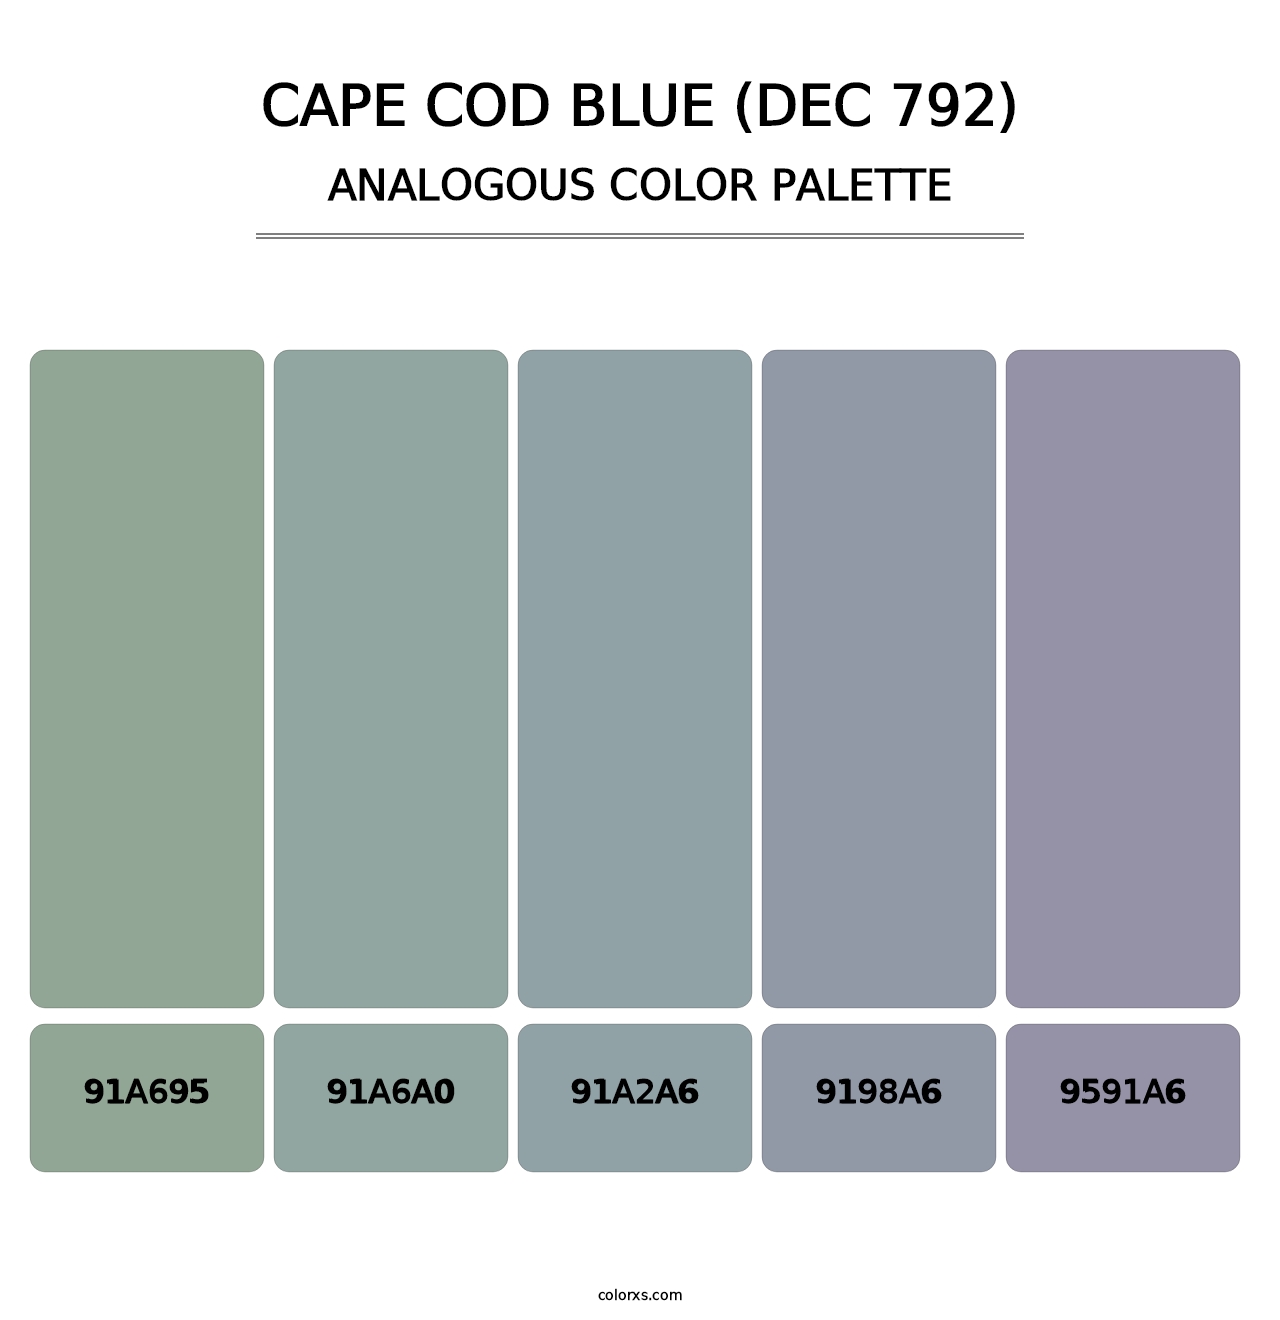 Cape Cod Blue (DEC 792) - Analogous Color Palette